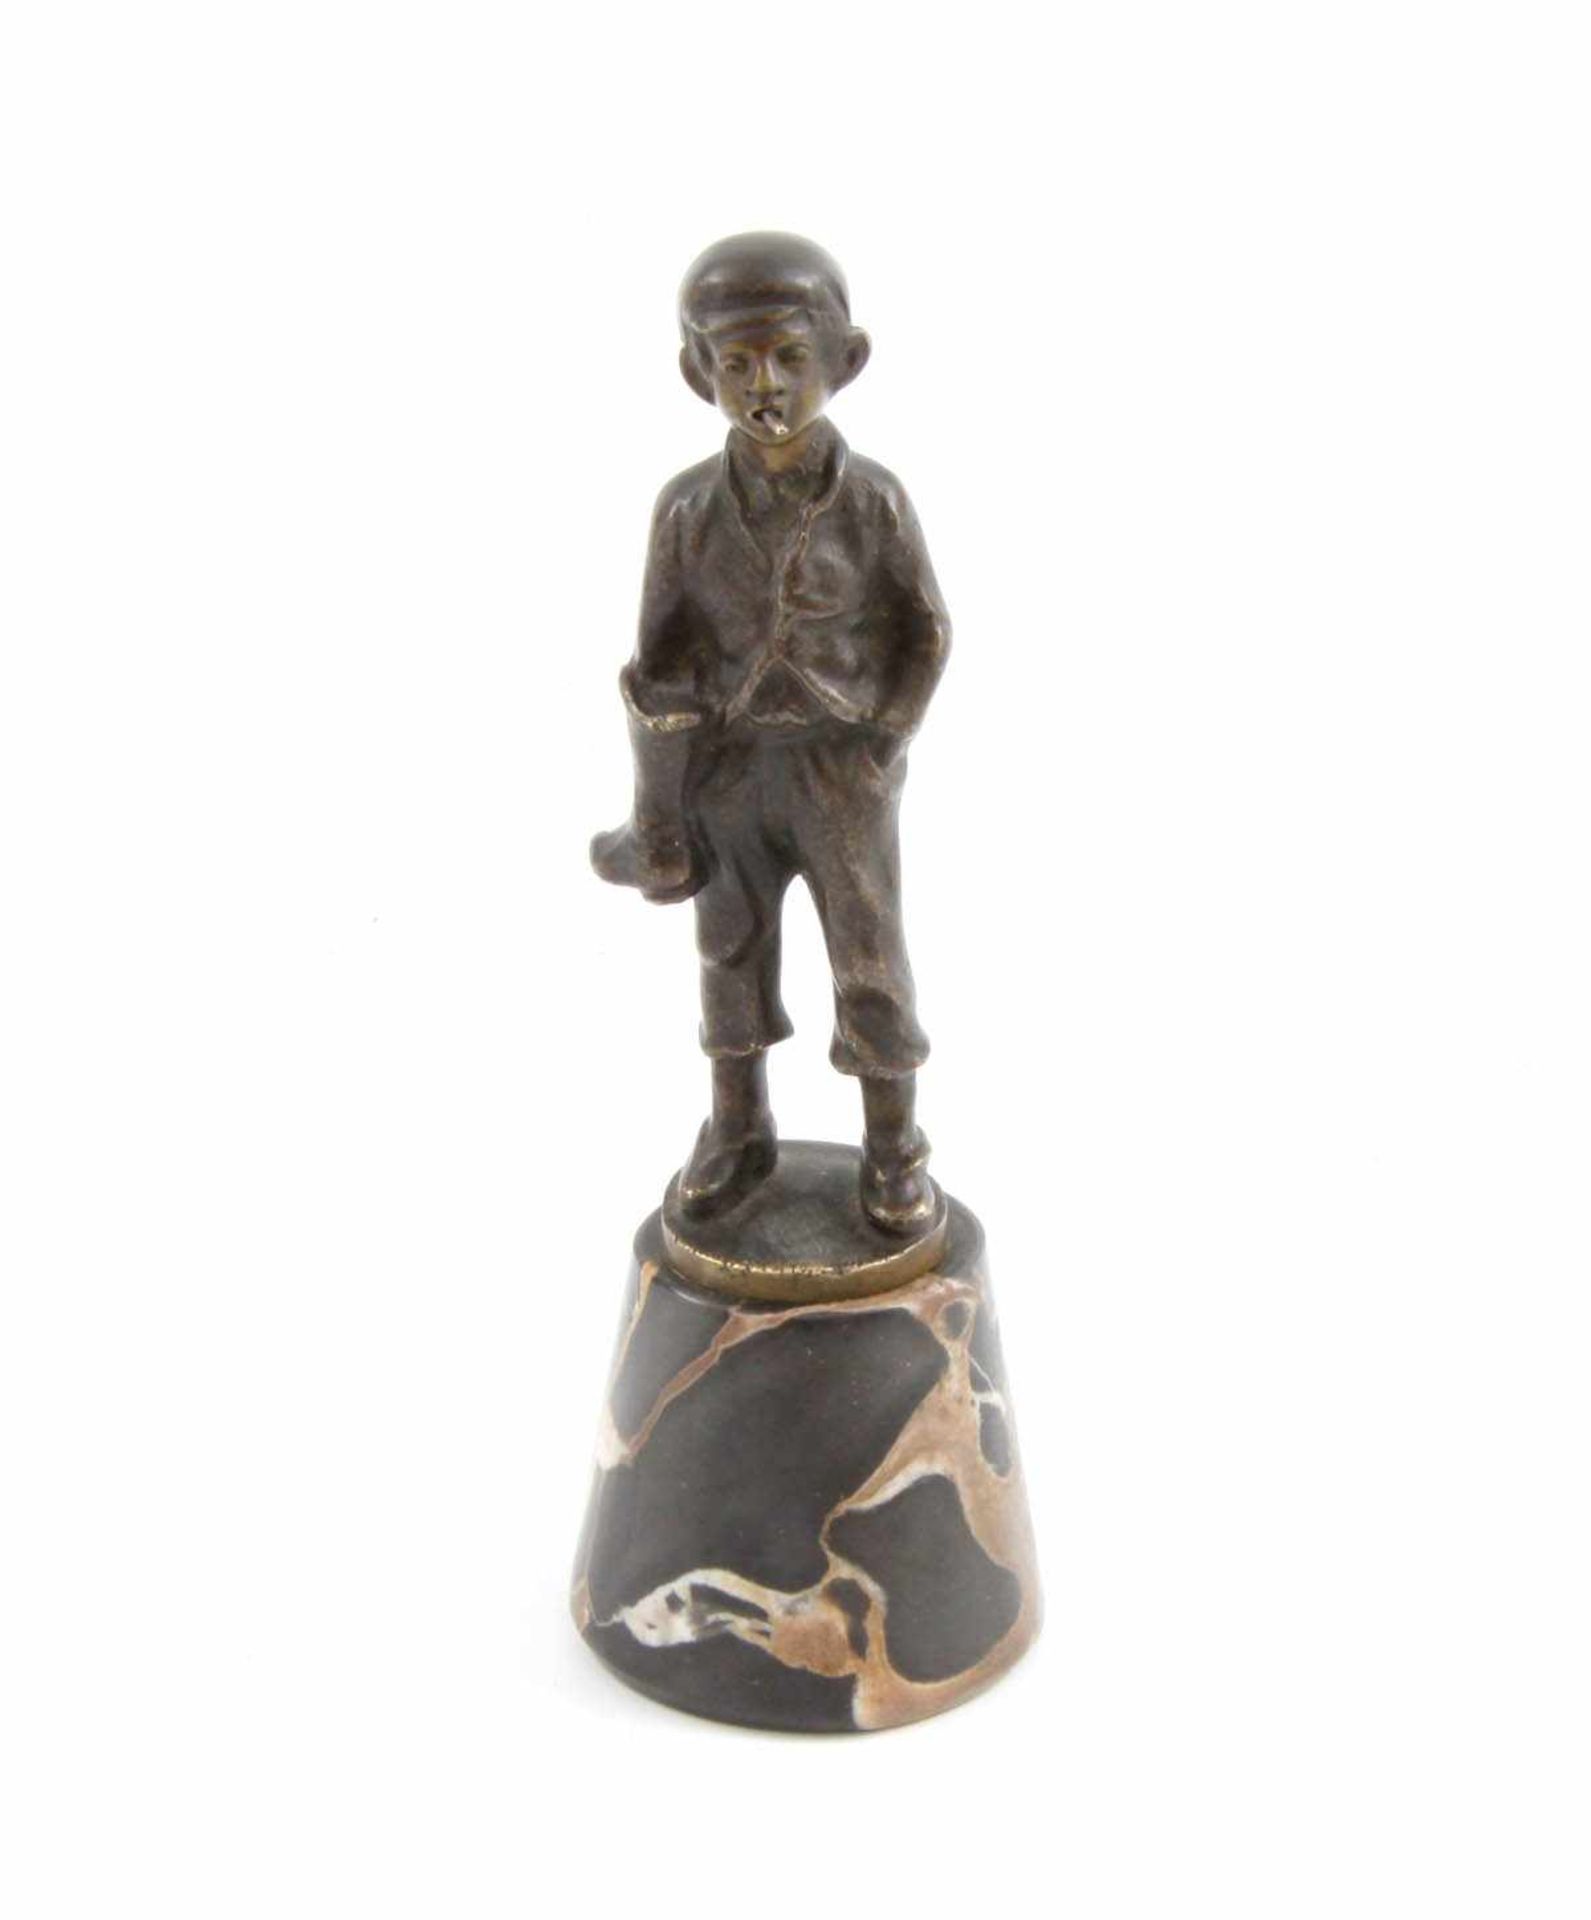 Unbekannter Bildhauer um 1900 Rauchender Schusterjunge. Bronze dunkel patiniert. Auf rundem